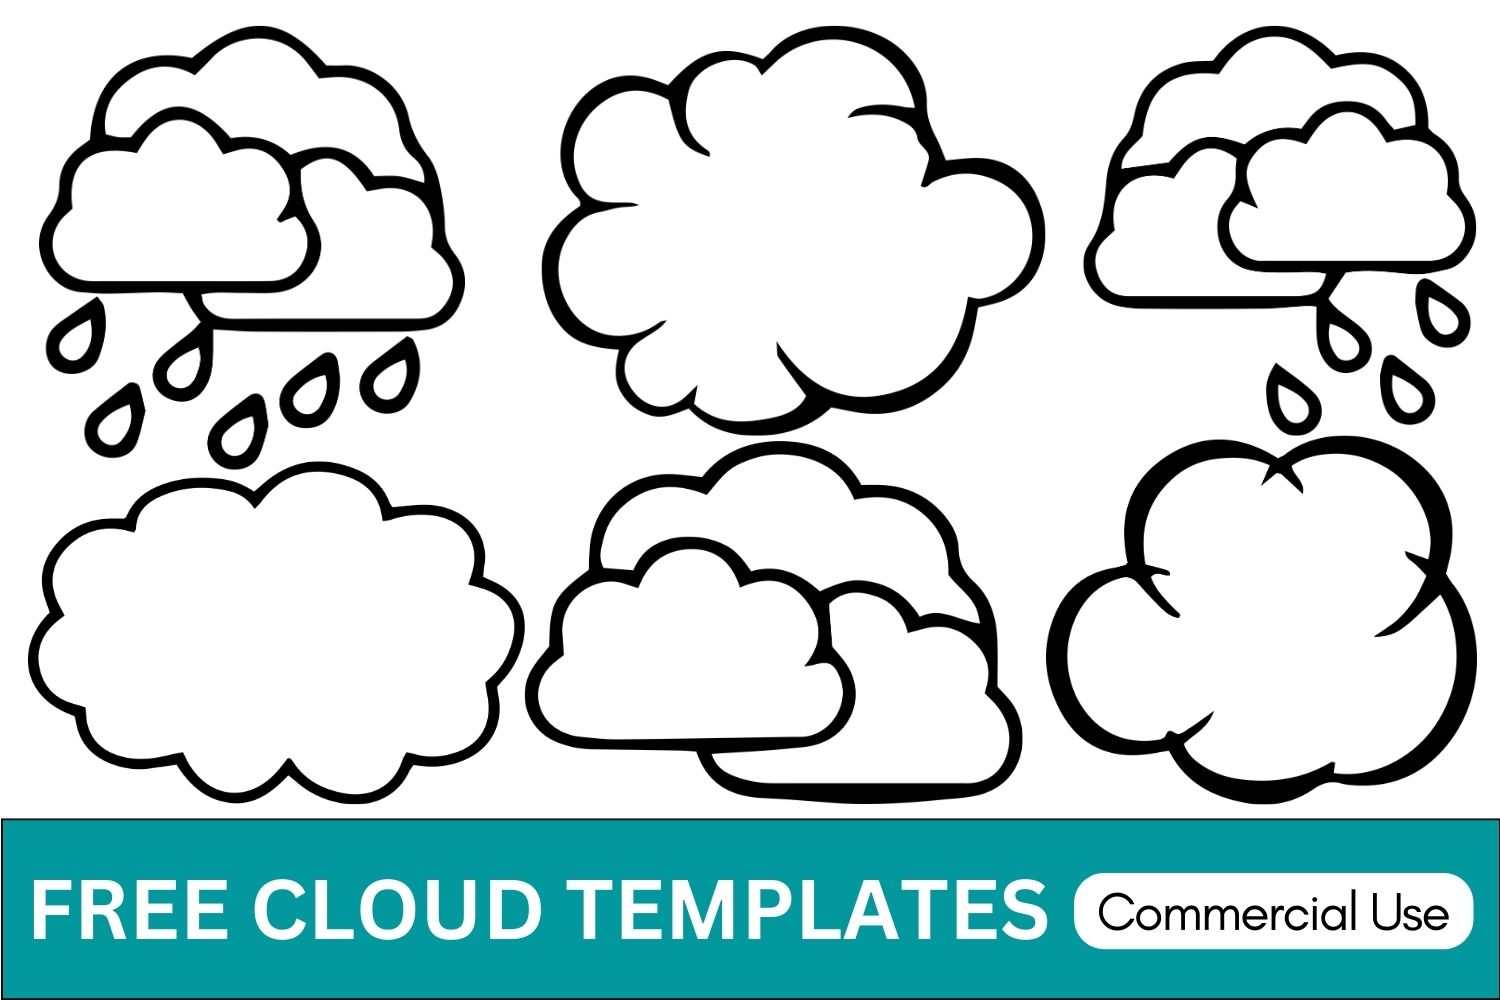 Cloud templates, cloud silhouette, Cloud clipart, Cloud stencil, Cloud svg, Cloud vector, Cloud cricut cut file, Free, Download, Weather, Rain, Clear sky